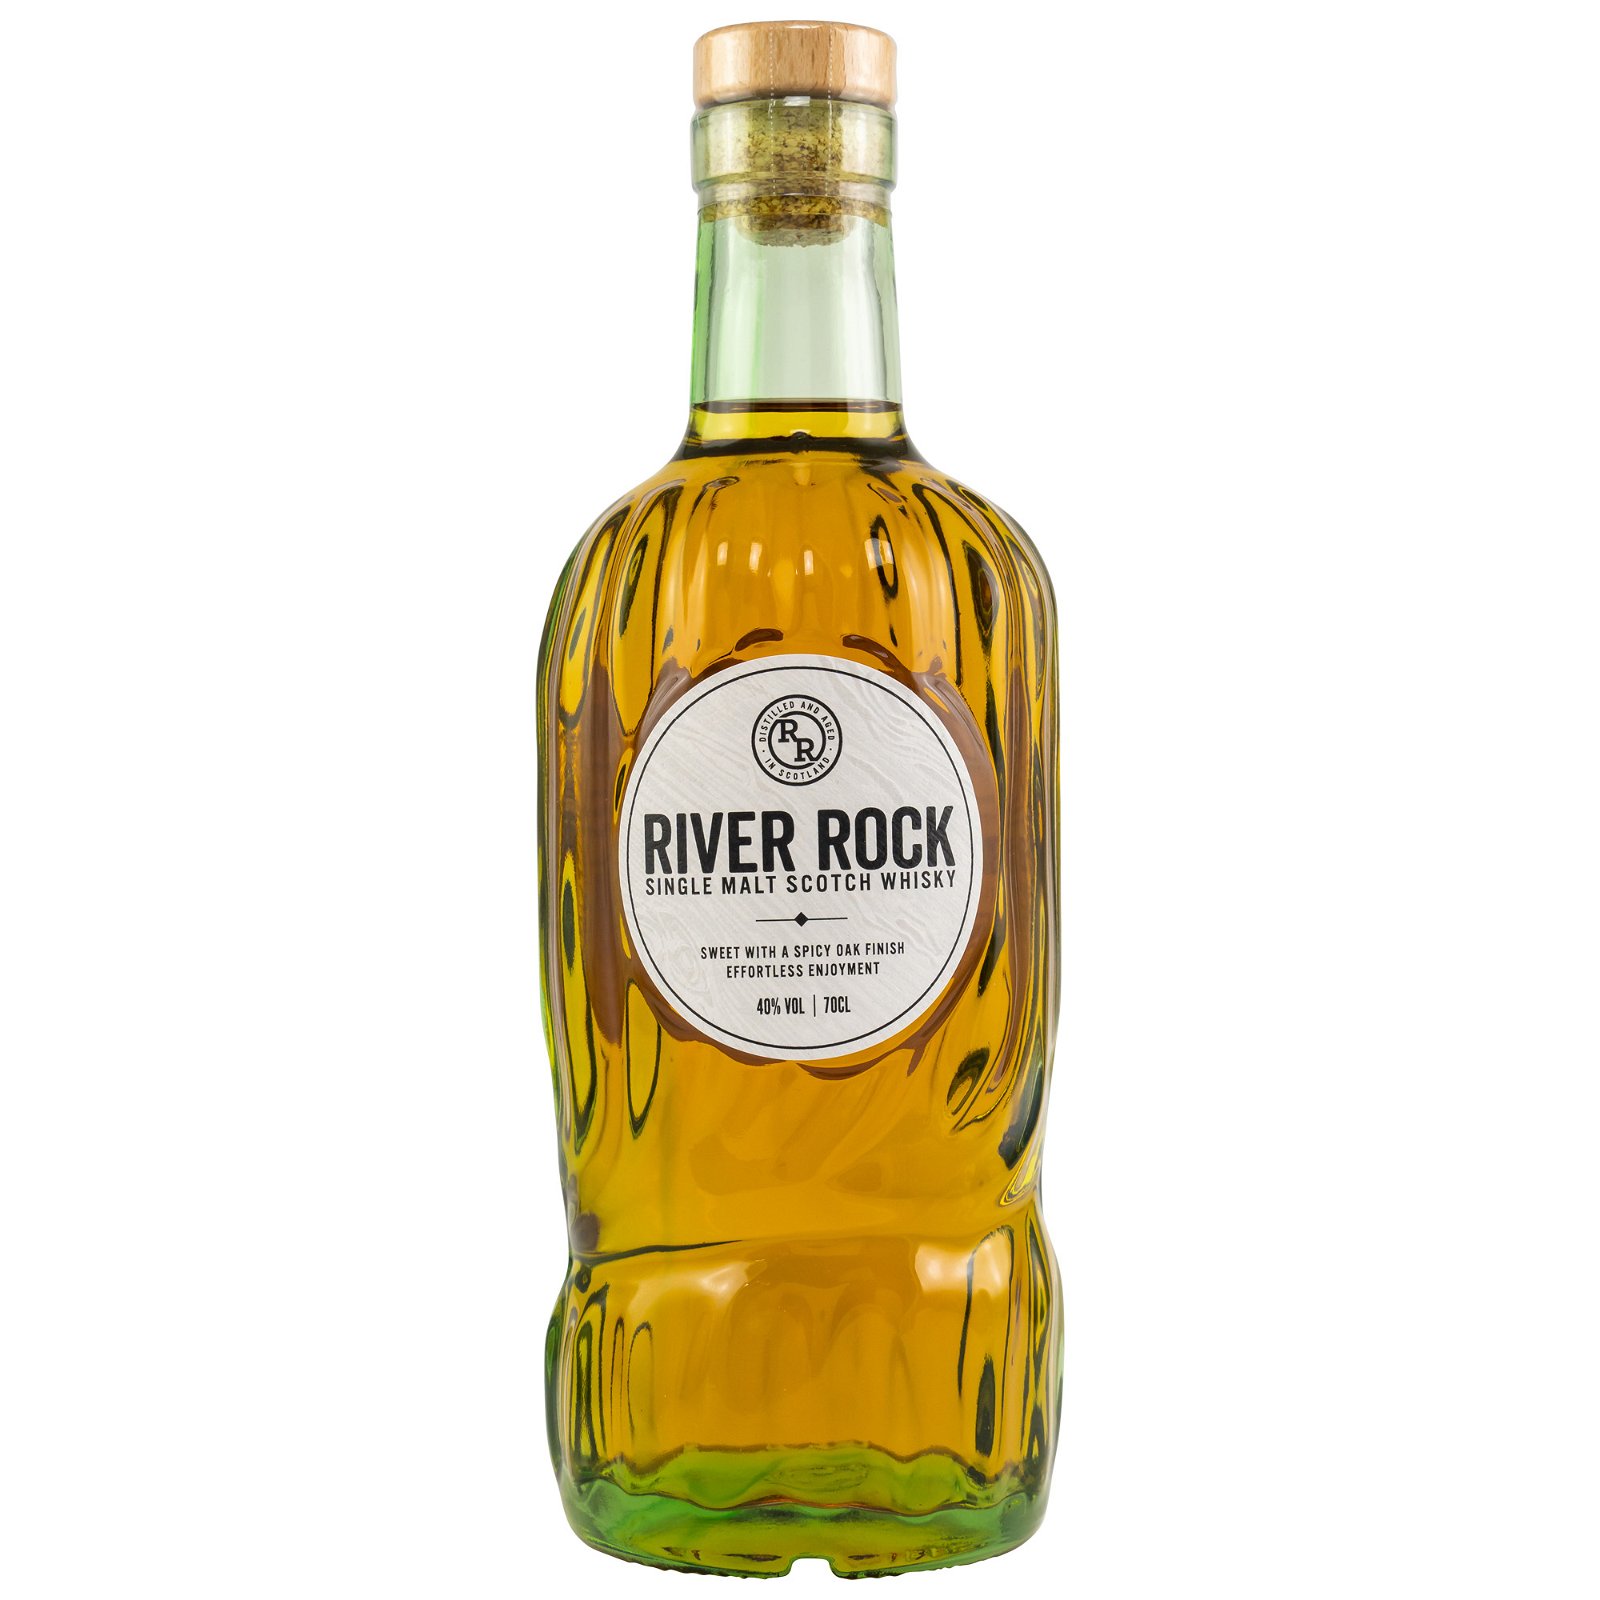 River Rock Single Malt Scotch Whisky Batch 3